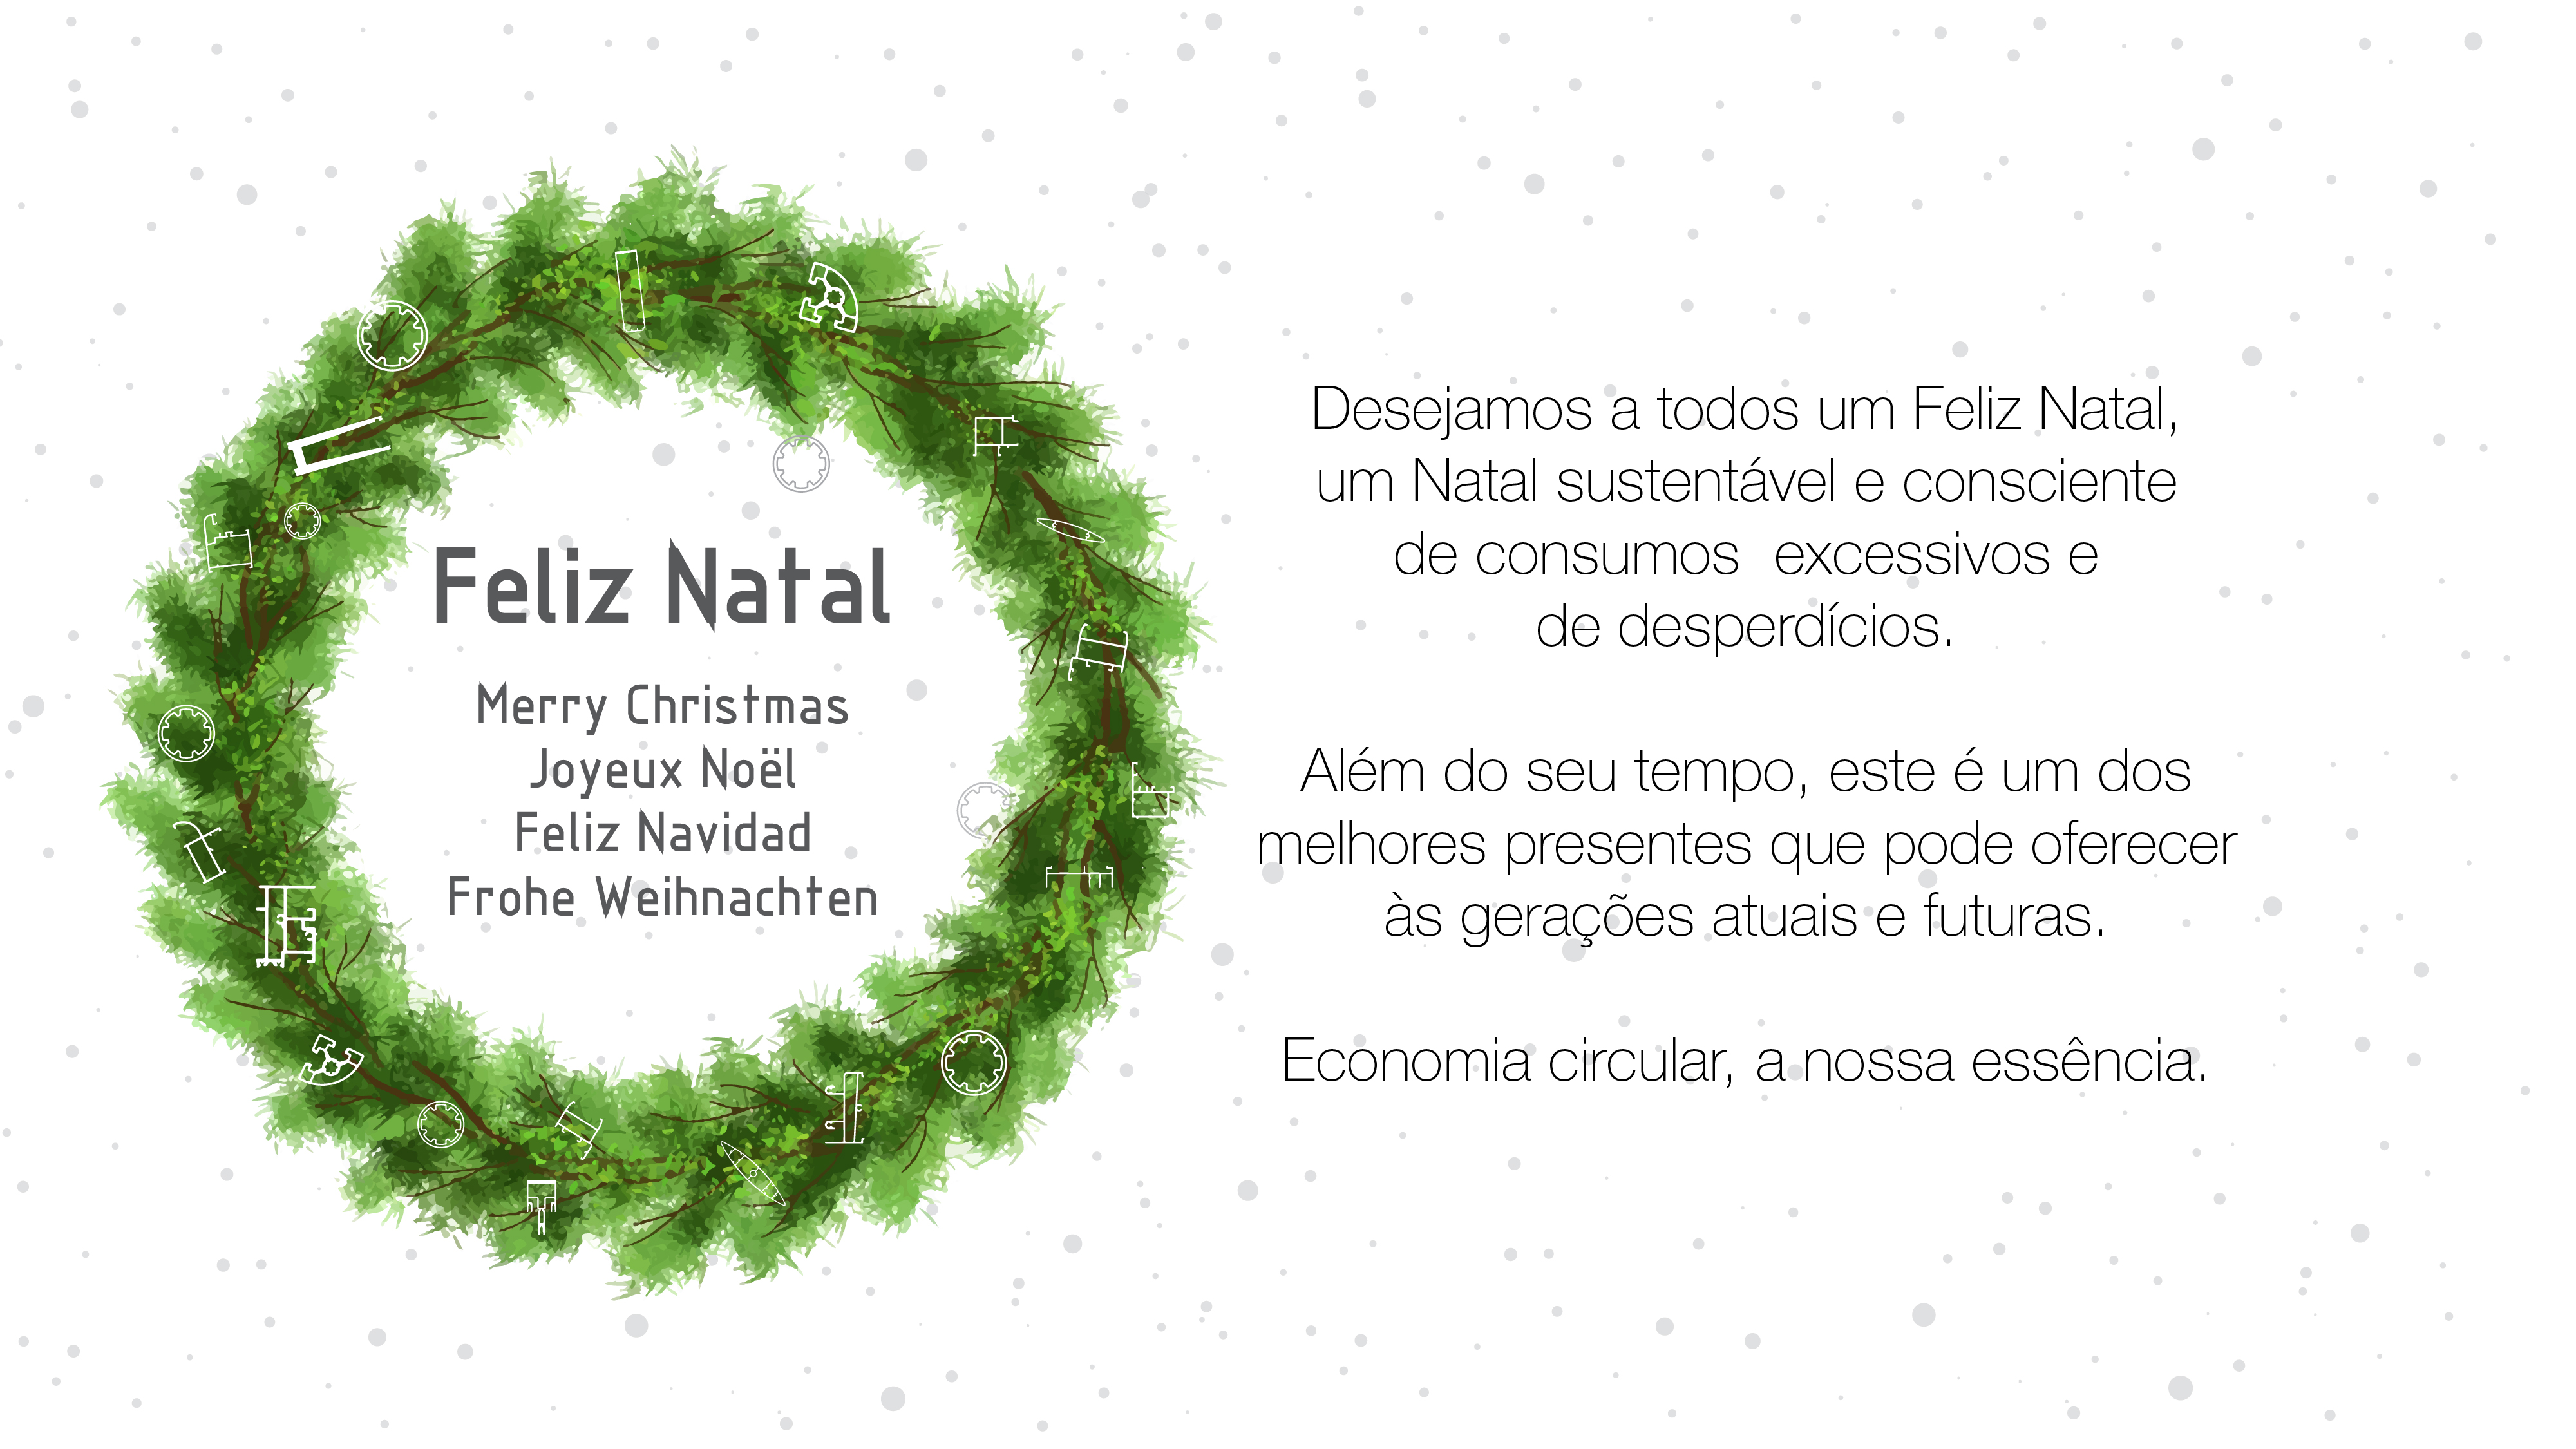 A Extrusal deseja a todos um Feliz Natal, um Natal sustentável e consciente de consumos excessivos e de desperdícios